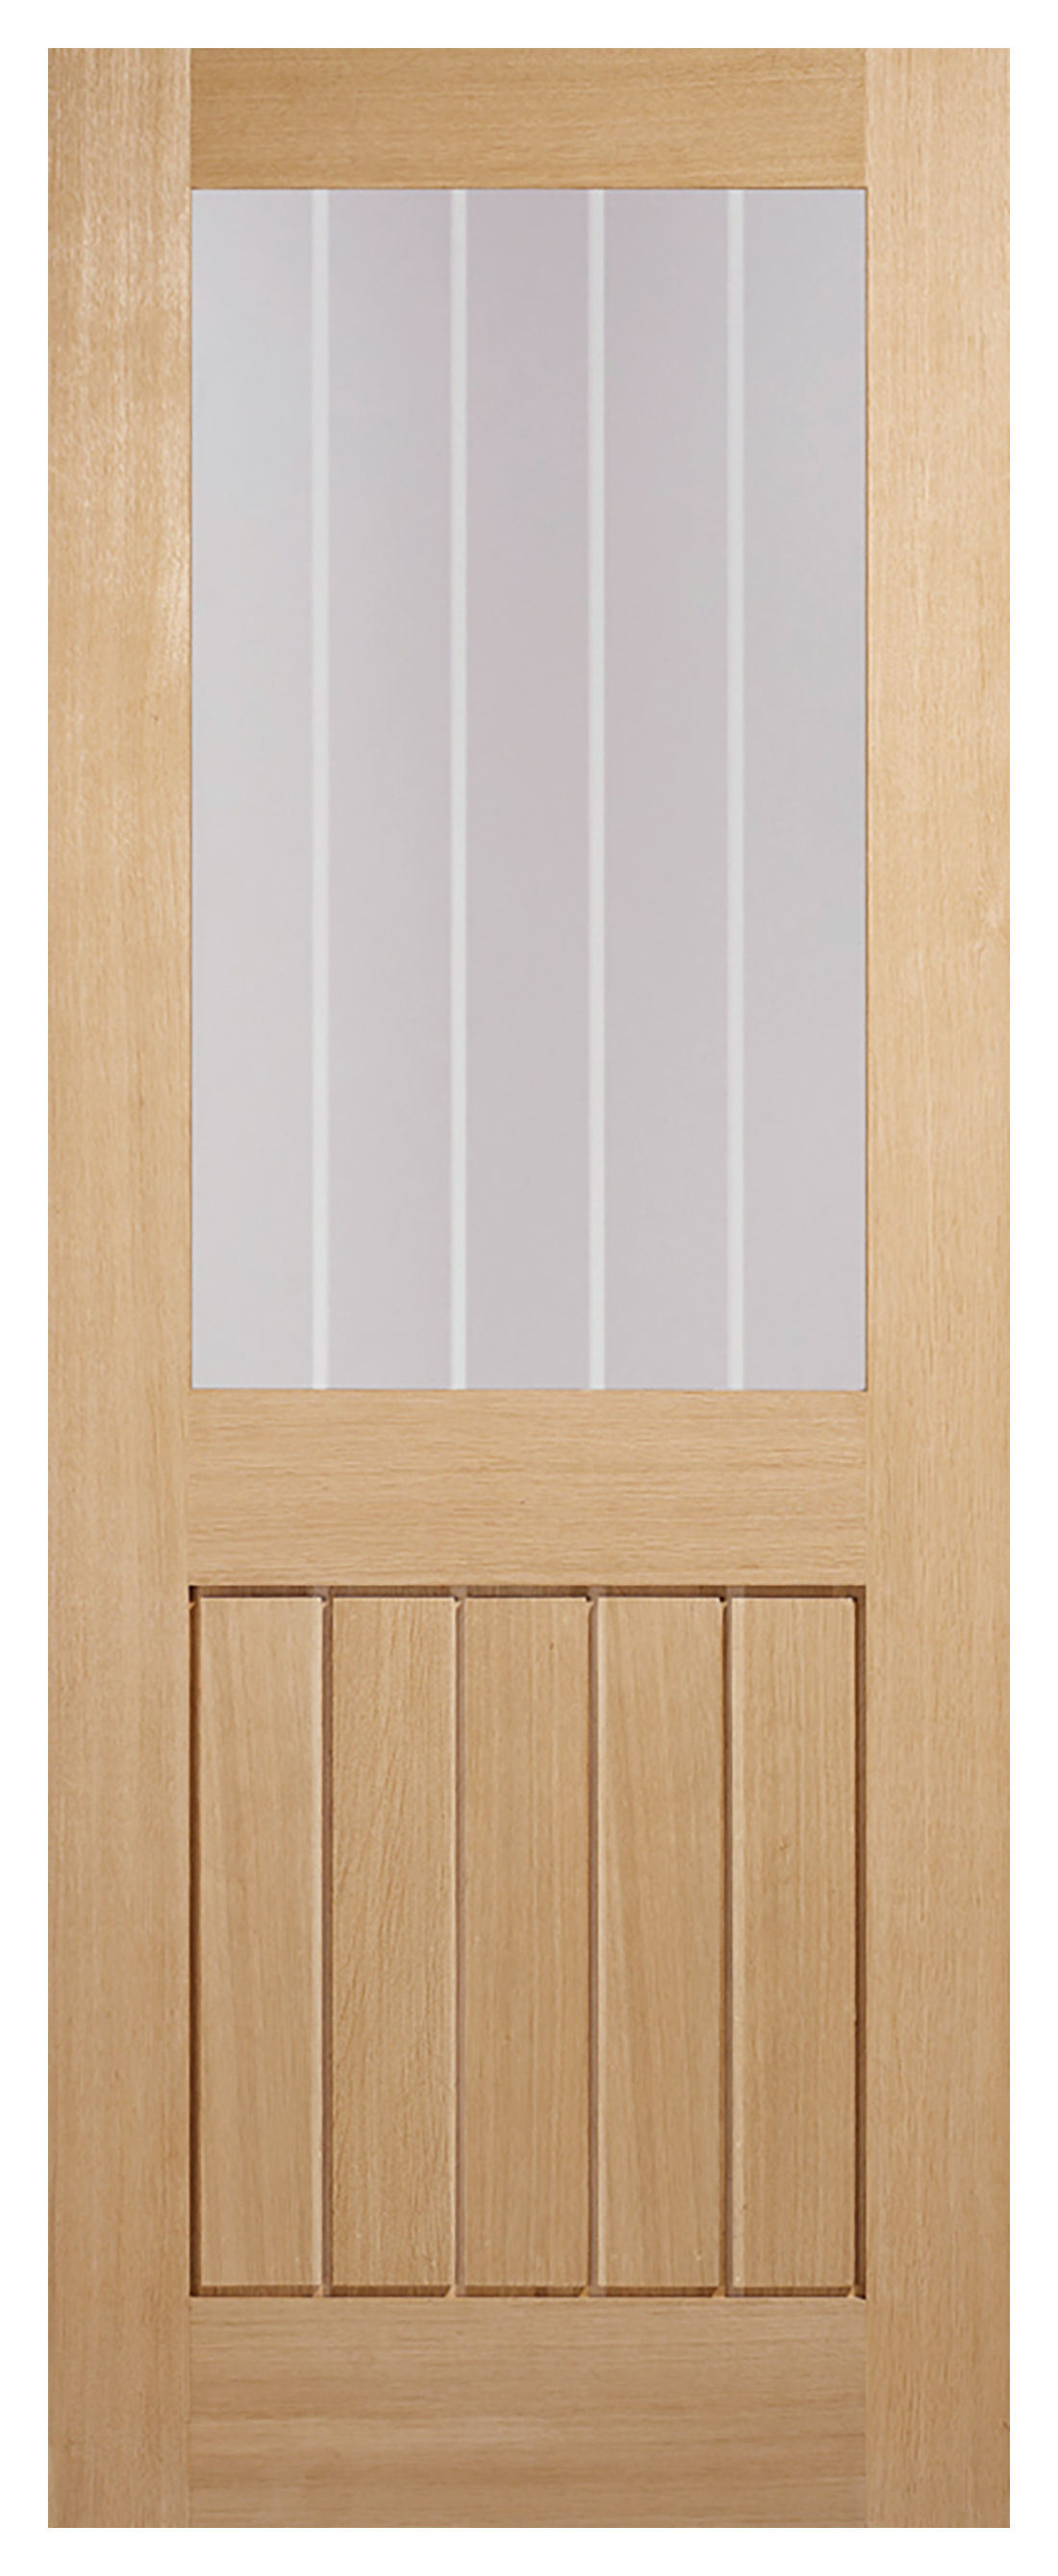 LPD Mexicano Clear Glazed Half Light Pre-finished Oak Internal Door - 1981mm